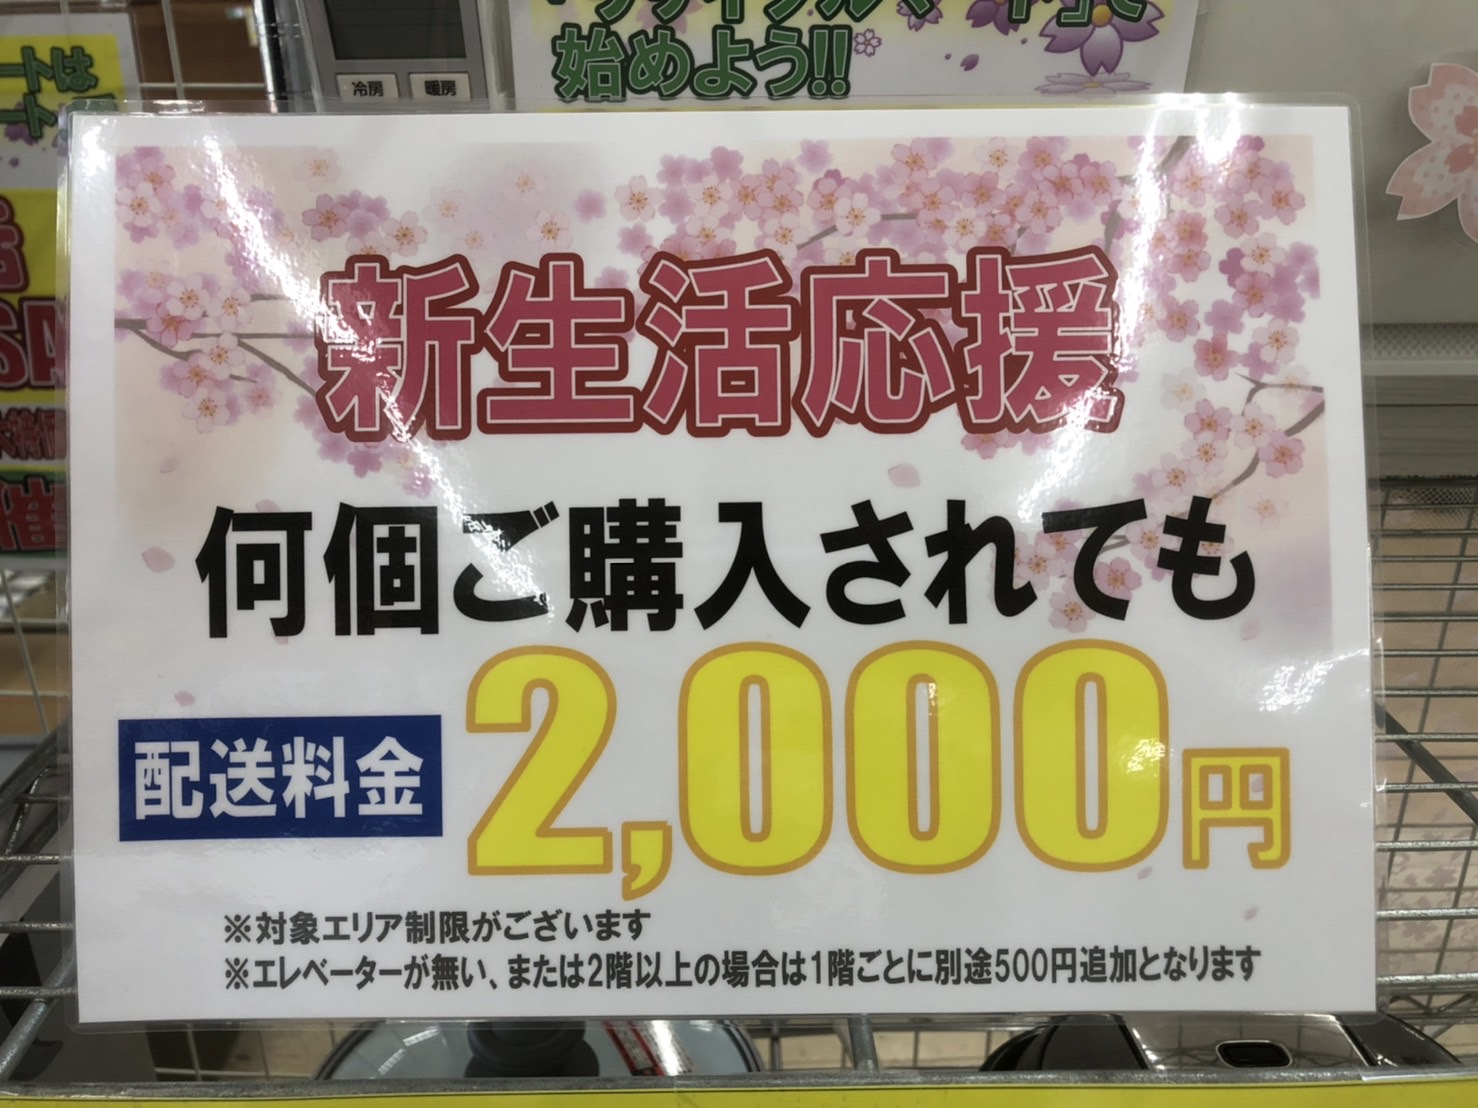 配送は何点でも2000円で承ります(*^▽^*)